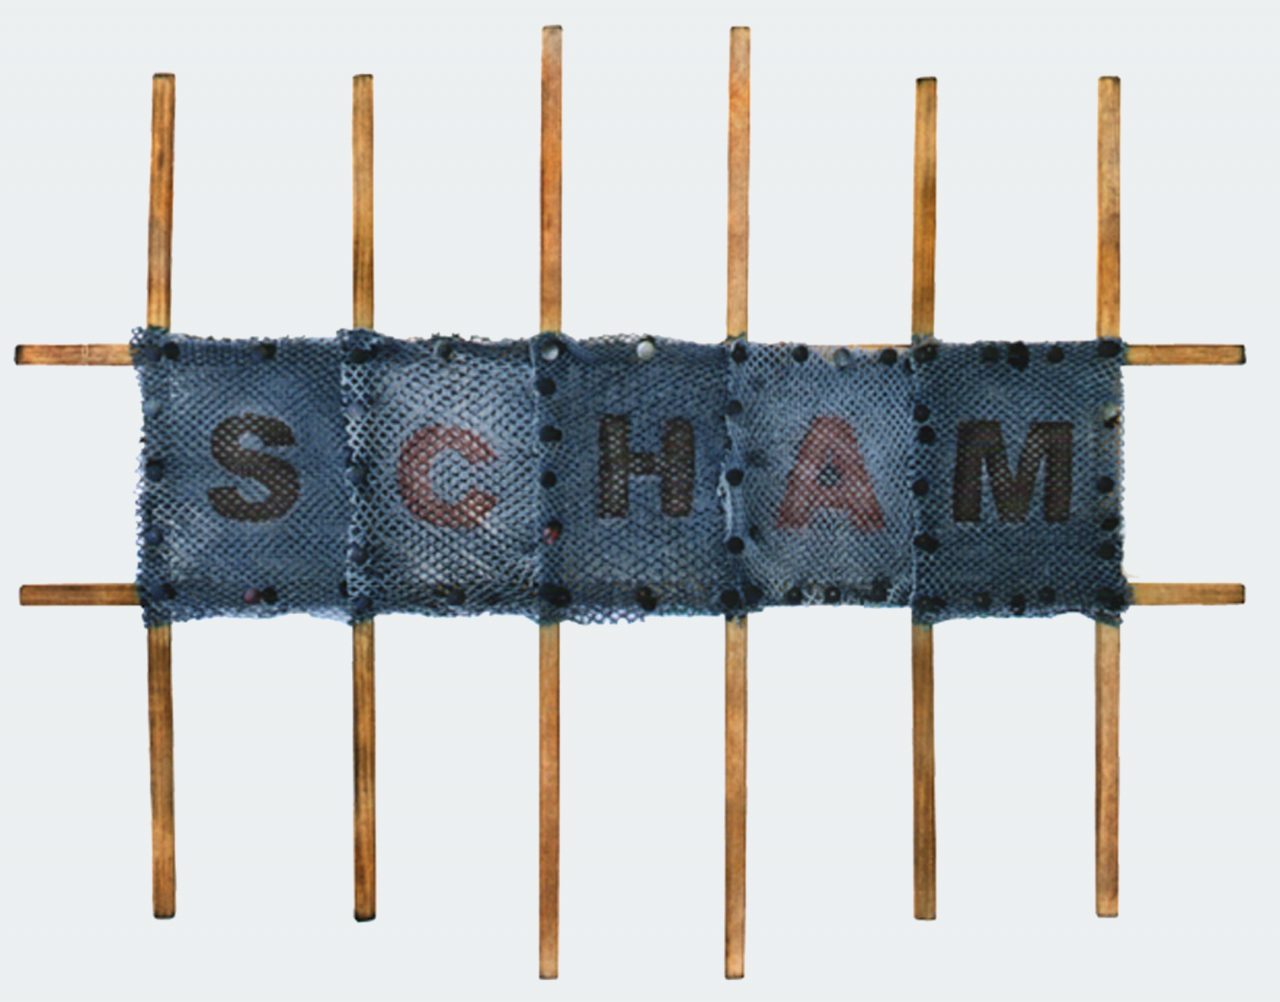 SCHAM, 52 x 67 cm, 1999